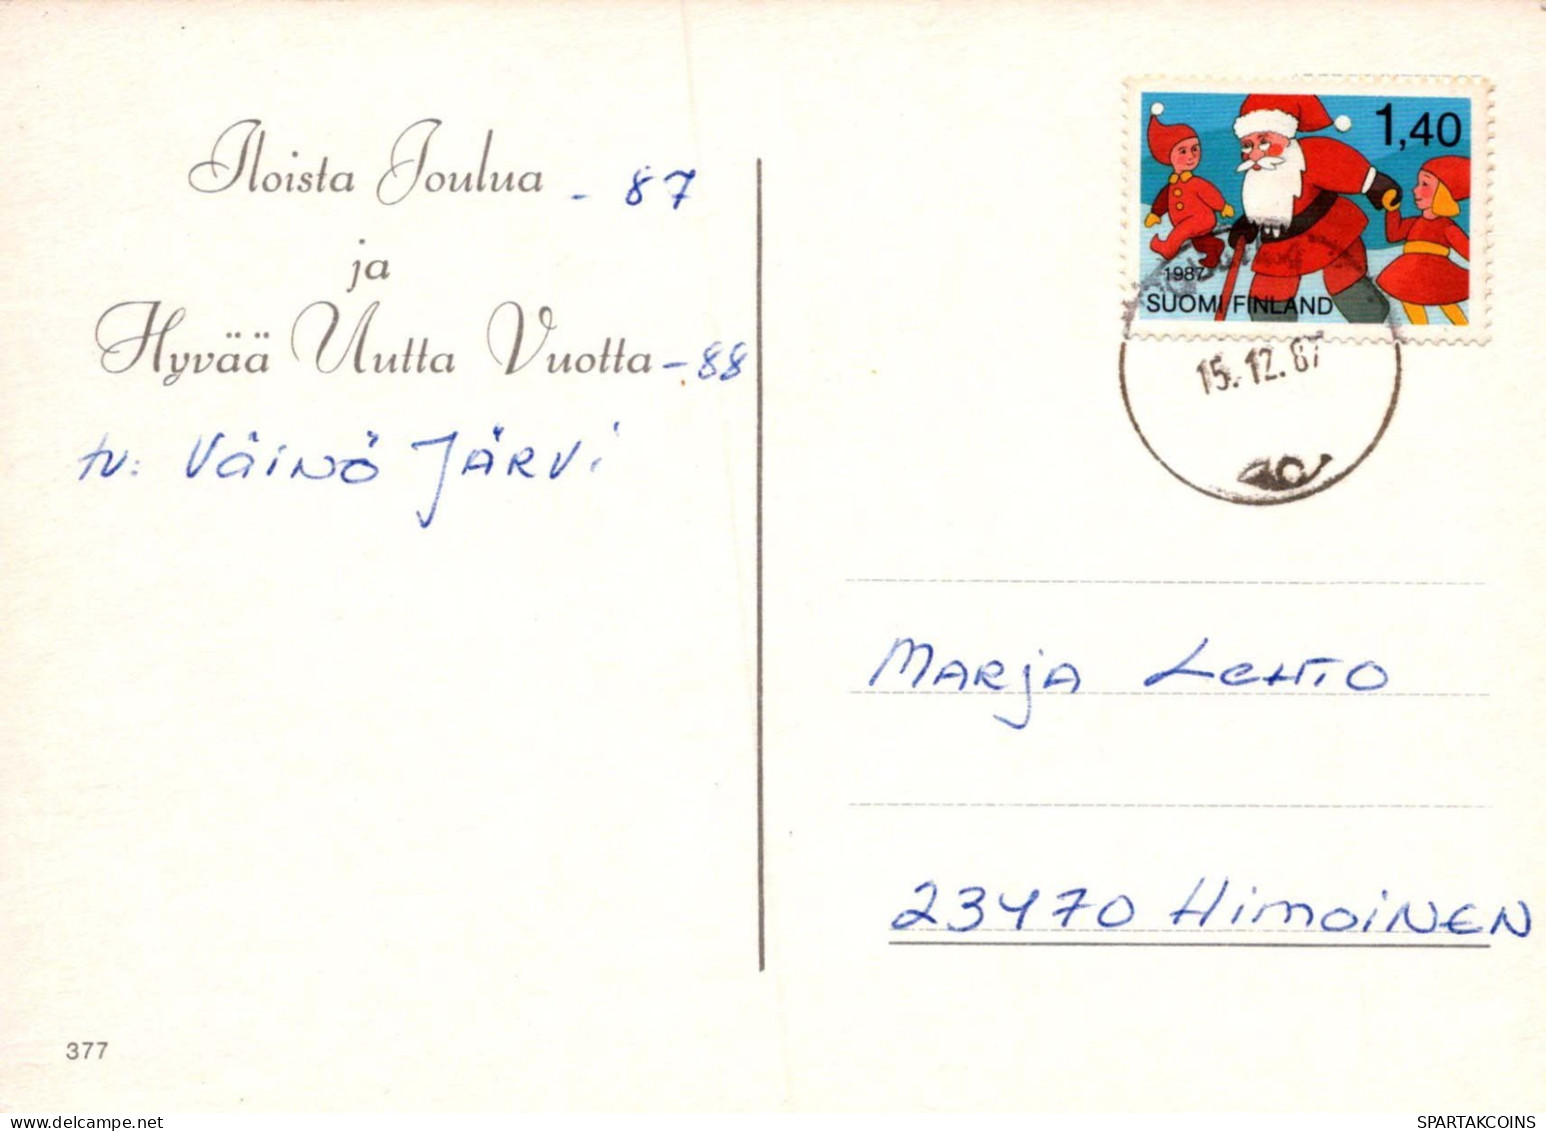 Bonne Année Noël LAPIN BOUGIE Vintage Carte Postale CPSM #PAV020.A - New Year